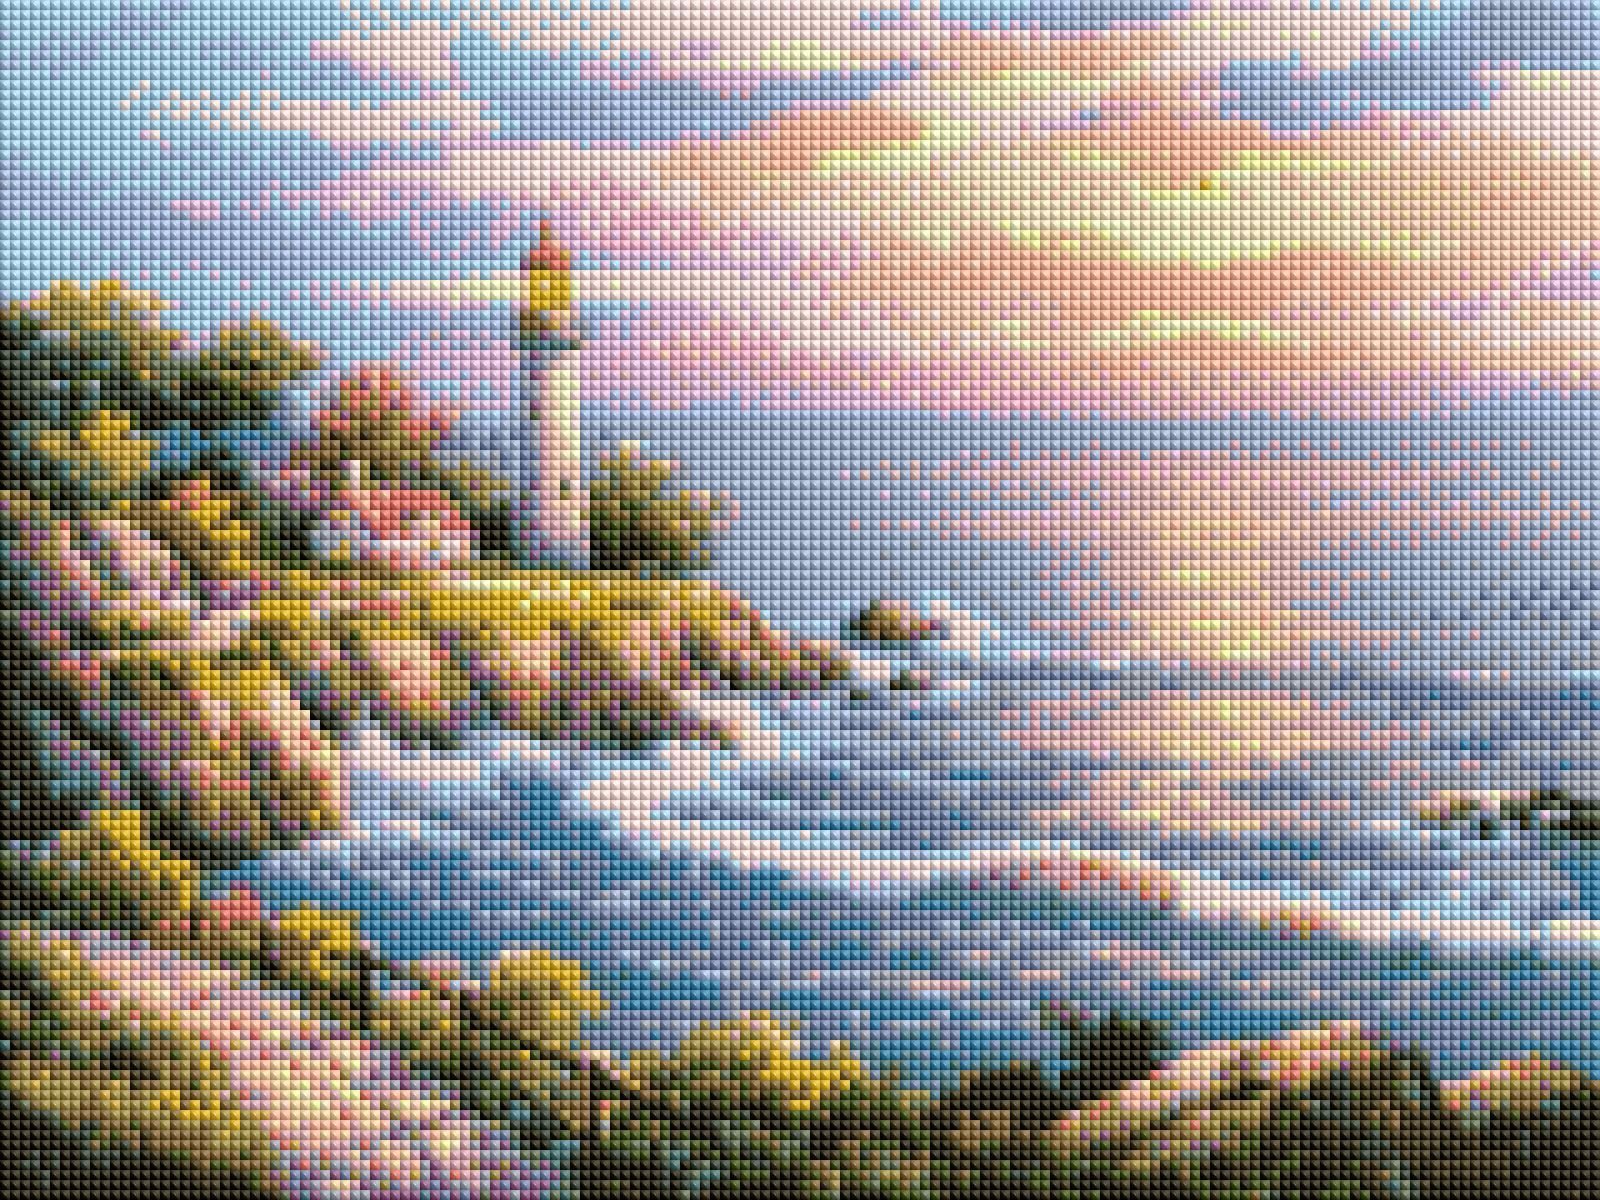 Coastal Lighthouse Diamond Painting - Painted Memory